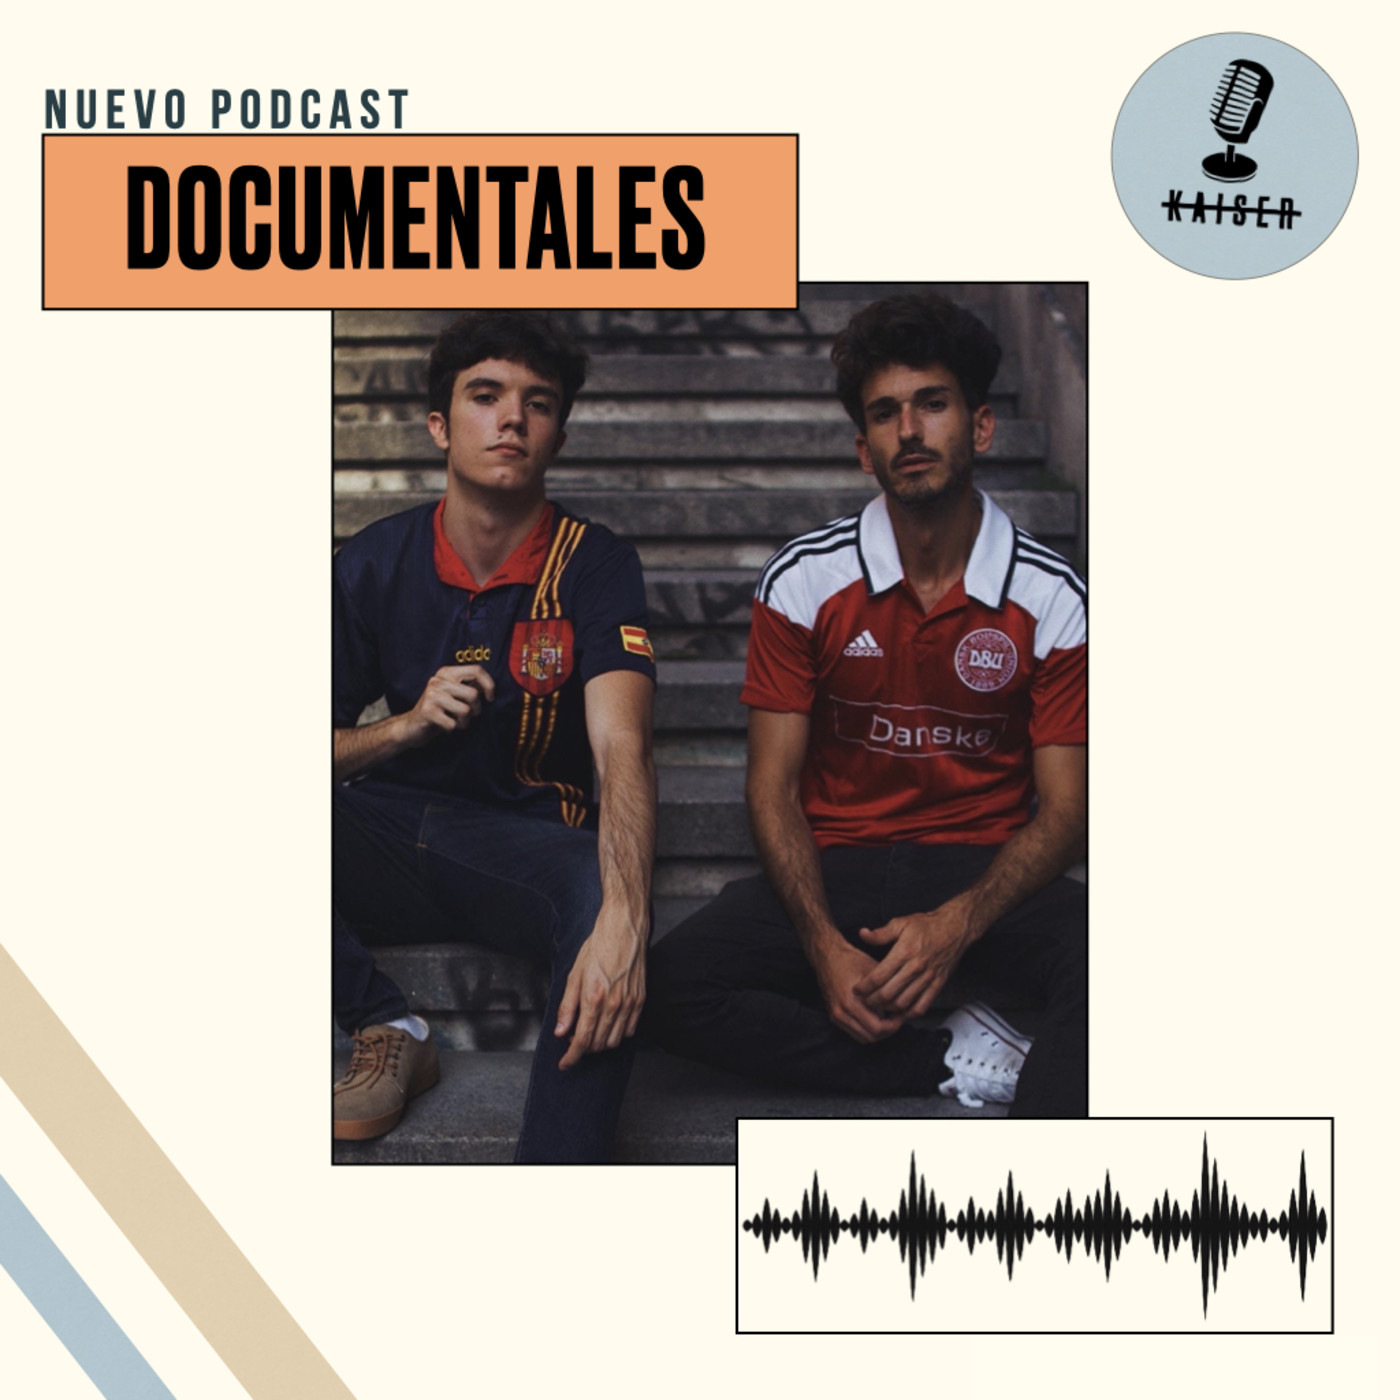 Juegos Olímpicos y documentales de fútbol | Podcast Improvisado